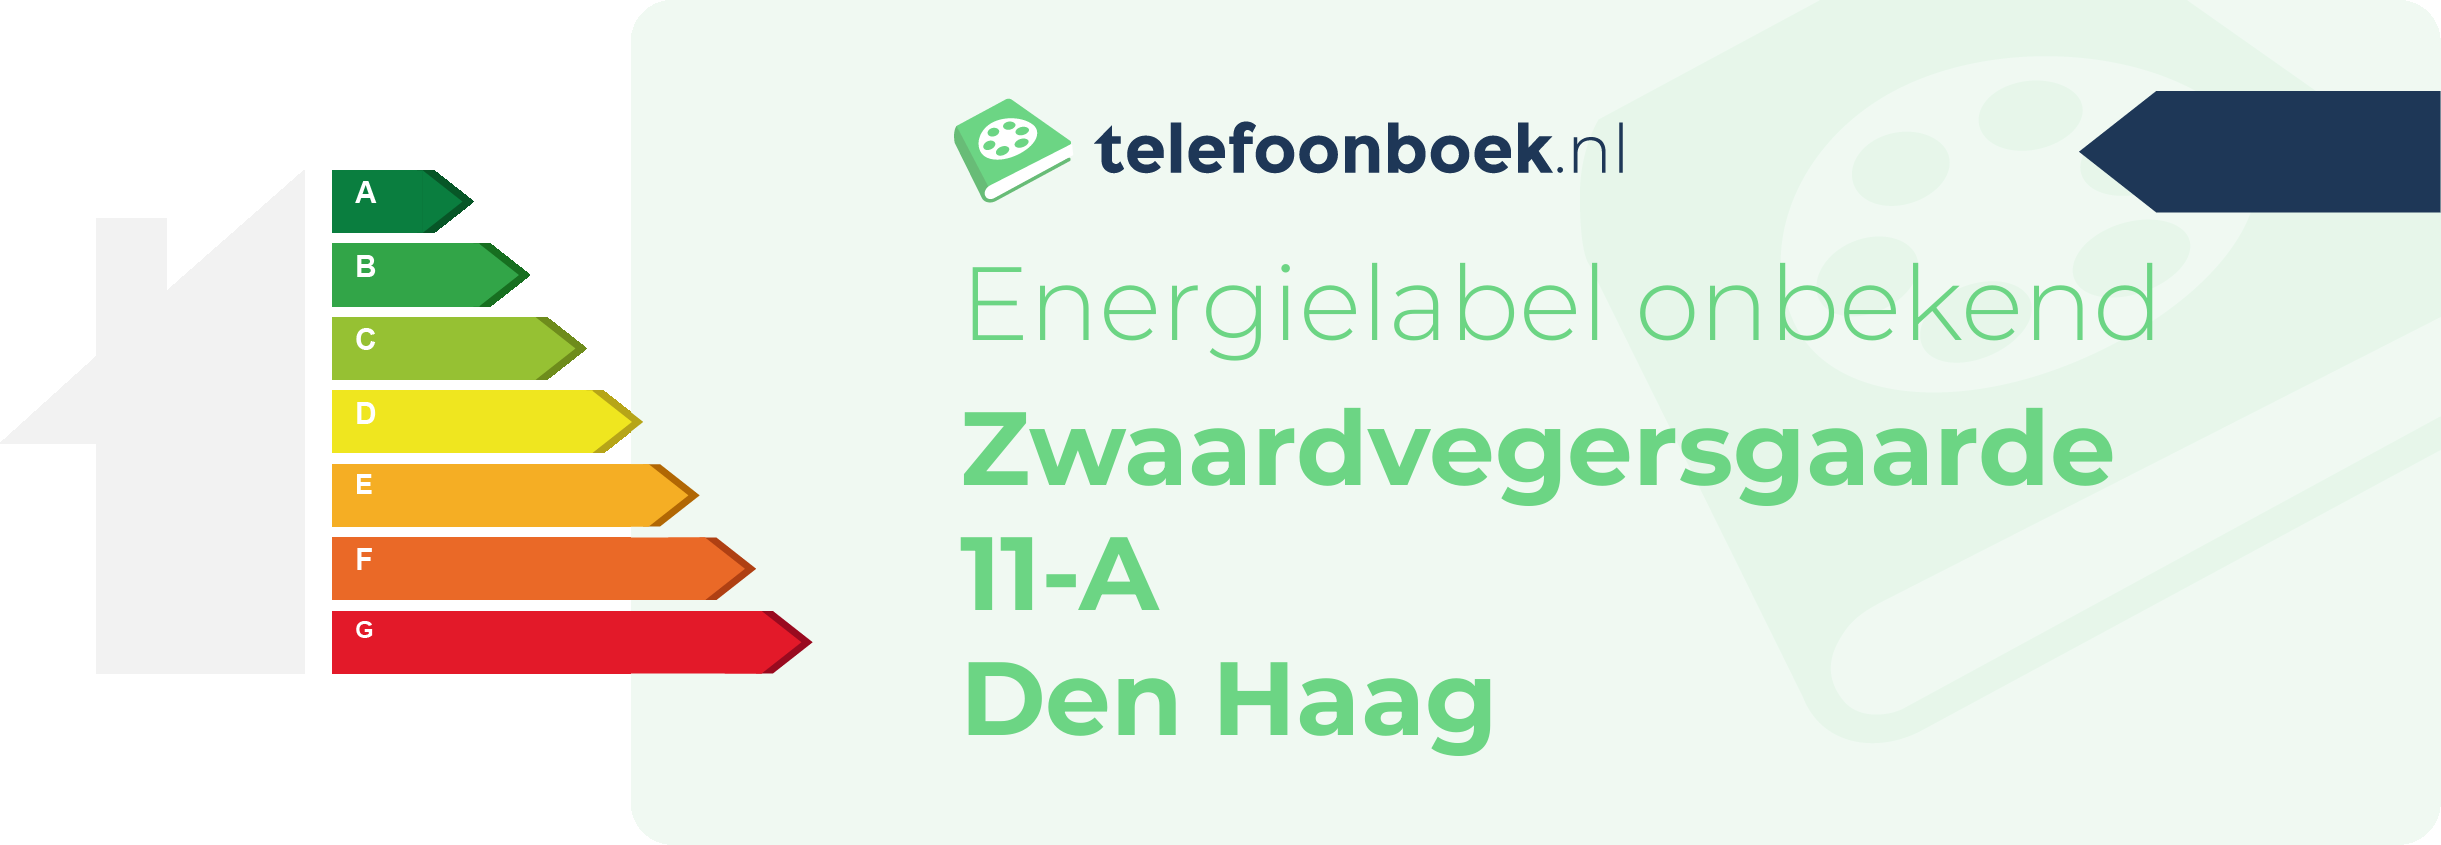 Energielabel Zwaardvegersgaarde 11-A Den Haag